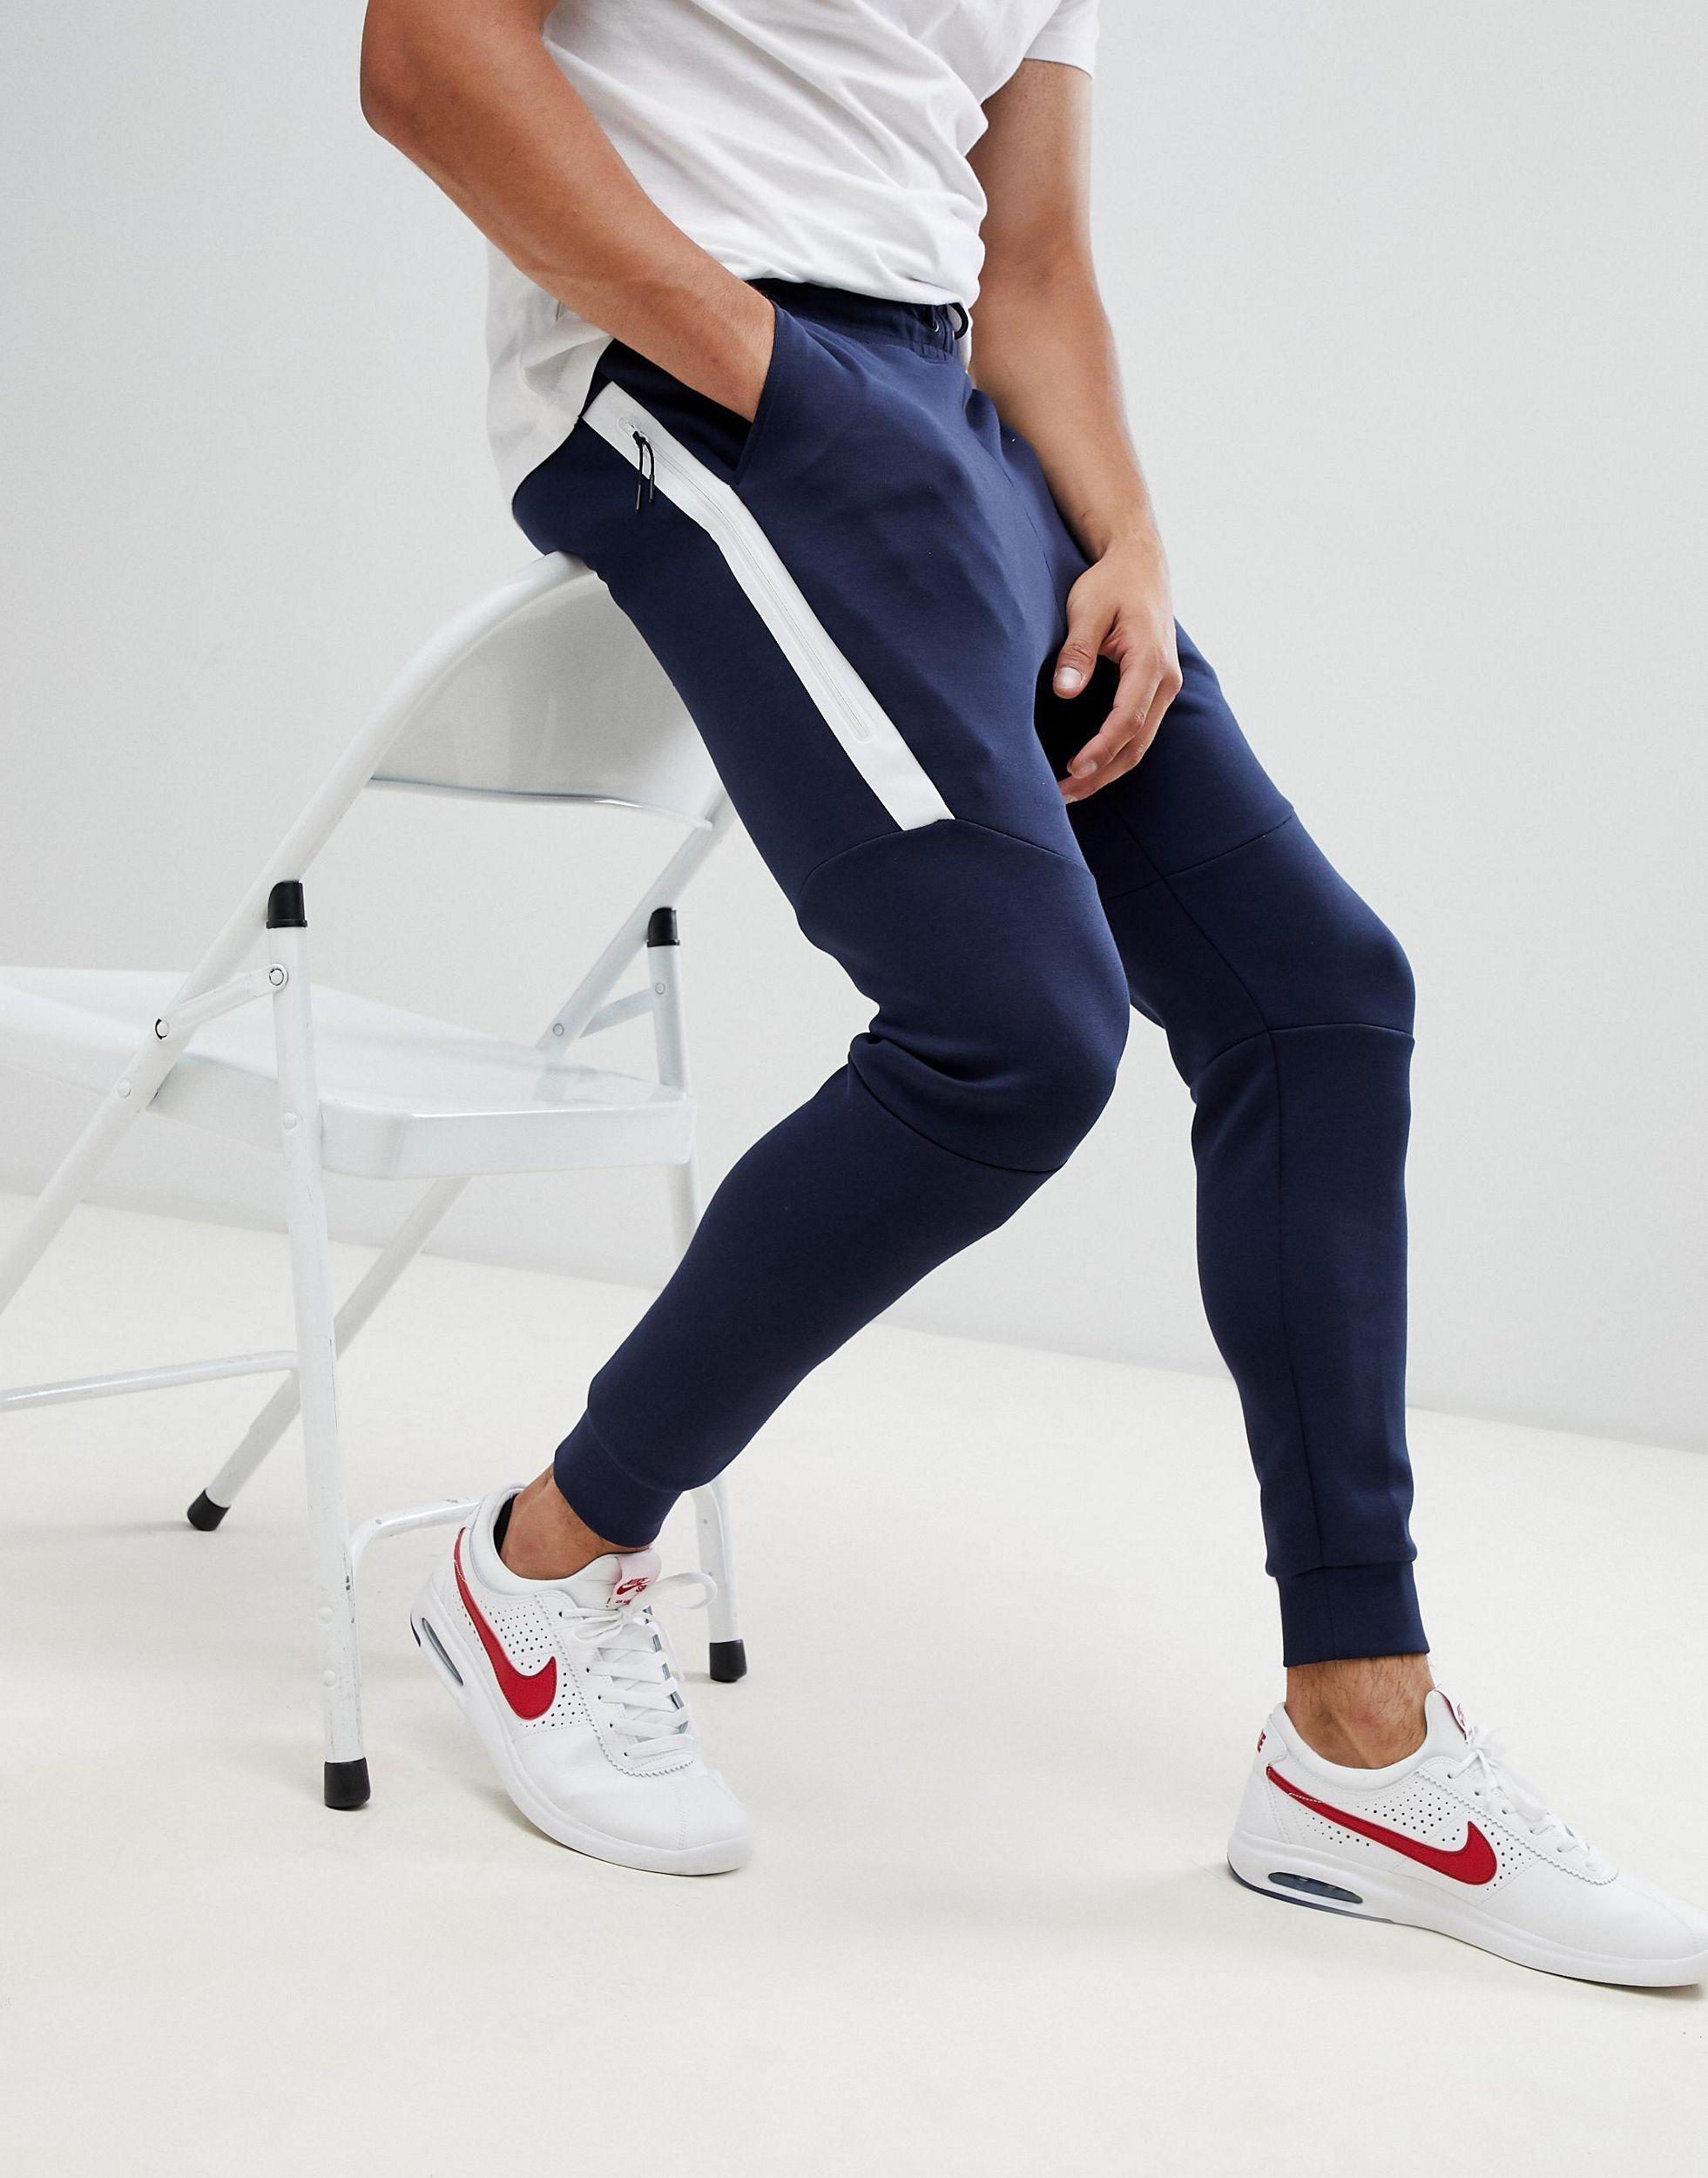 Nike Tech Fleece Jogger in Navy (Blue) for Men - Lyst